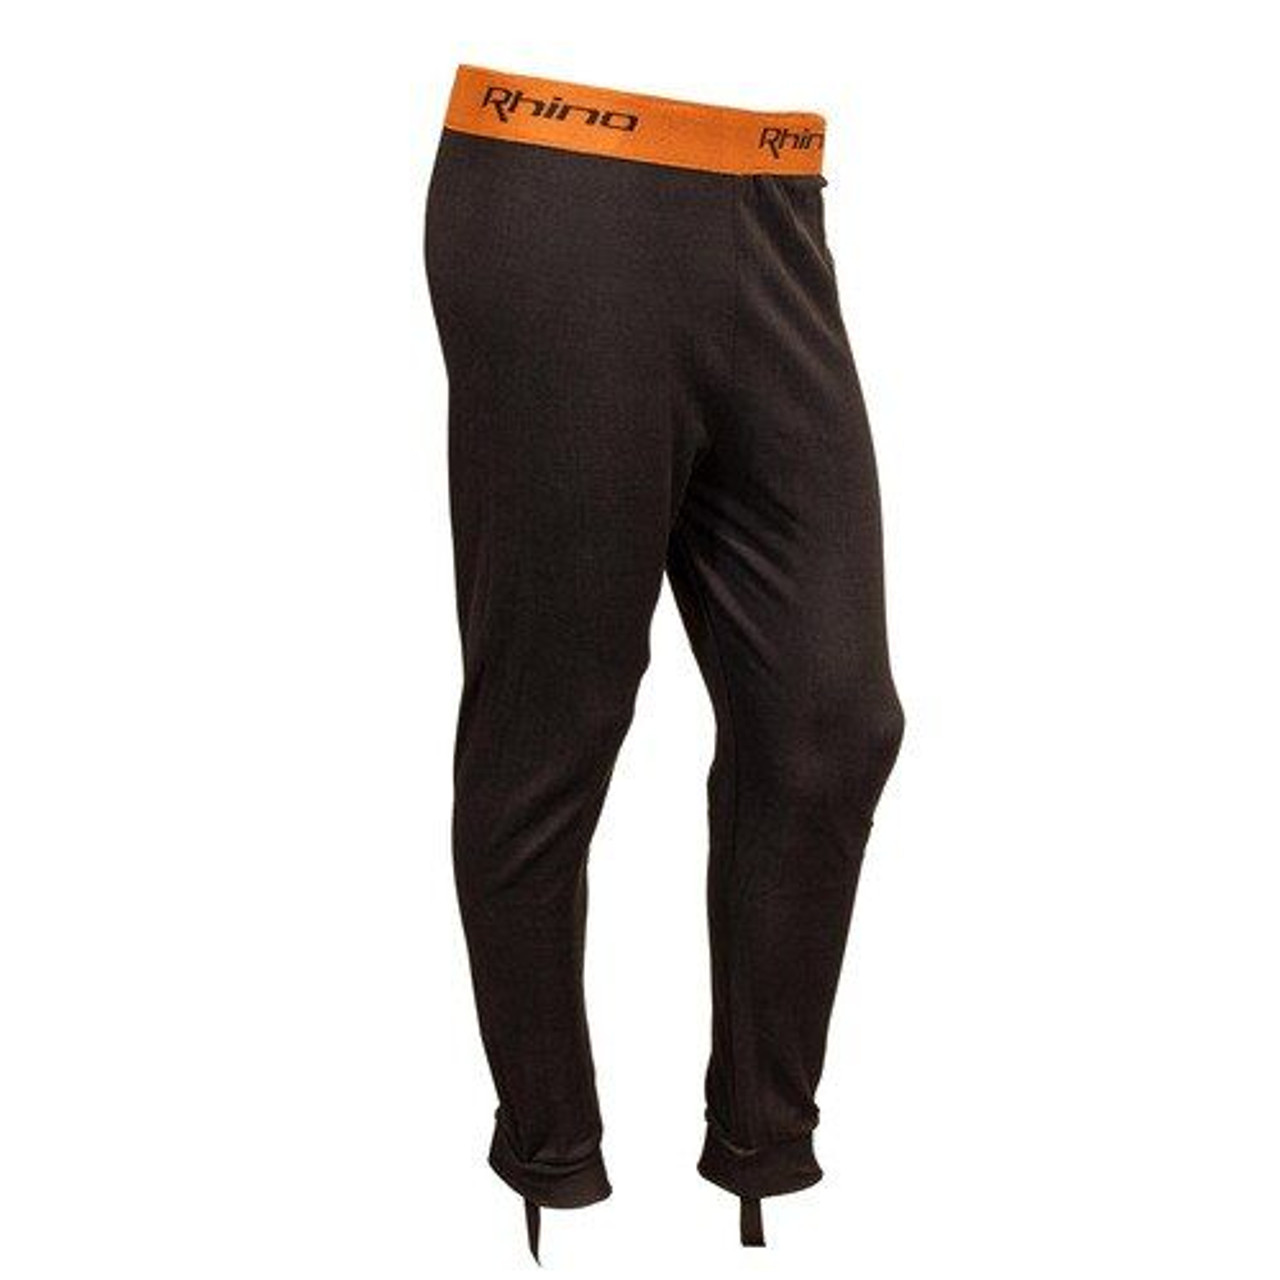 Pants made with DuPont ƒ?› Kevlar ?? fiber, Motorcycle Leggings for Men  made with DuPont ƒ?› Kevlar ?? fiber